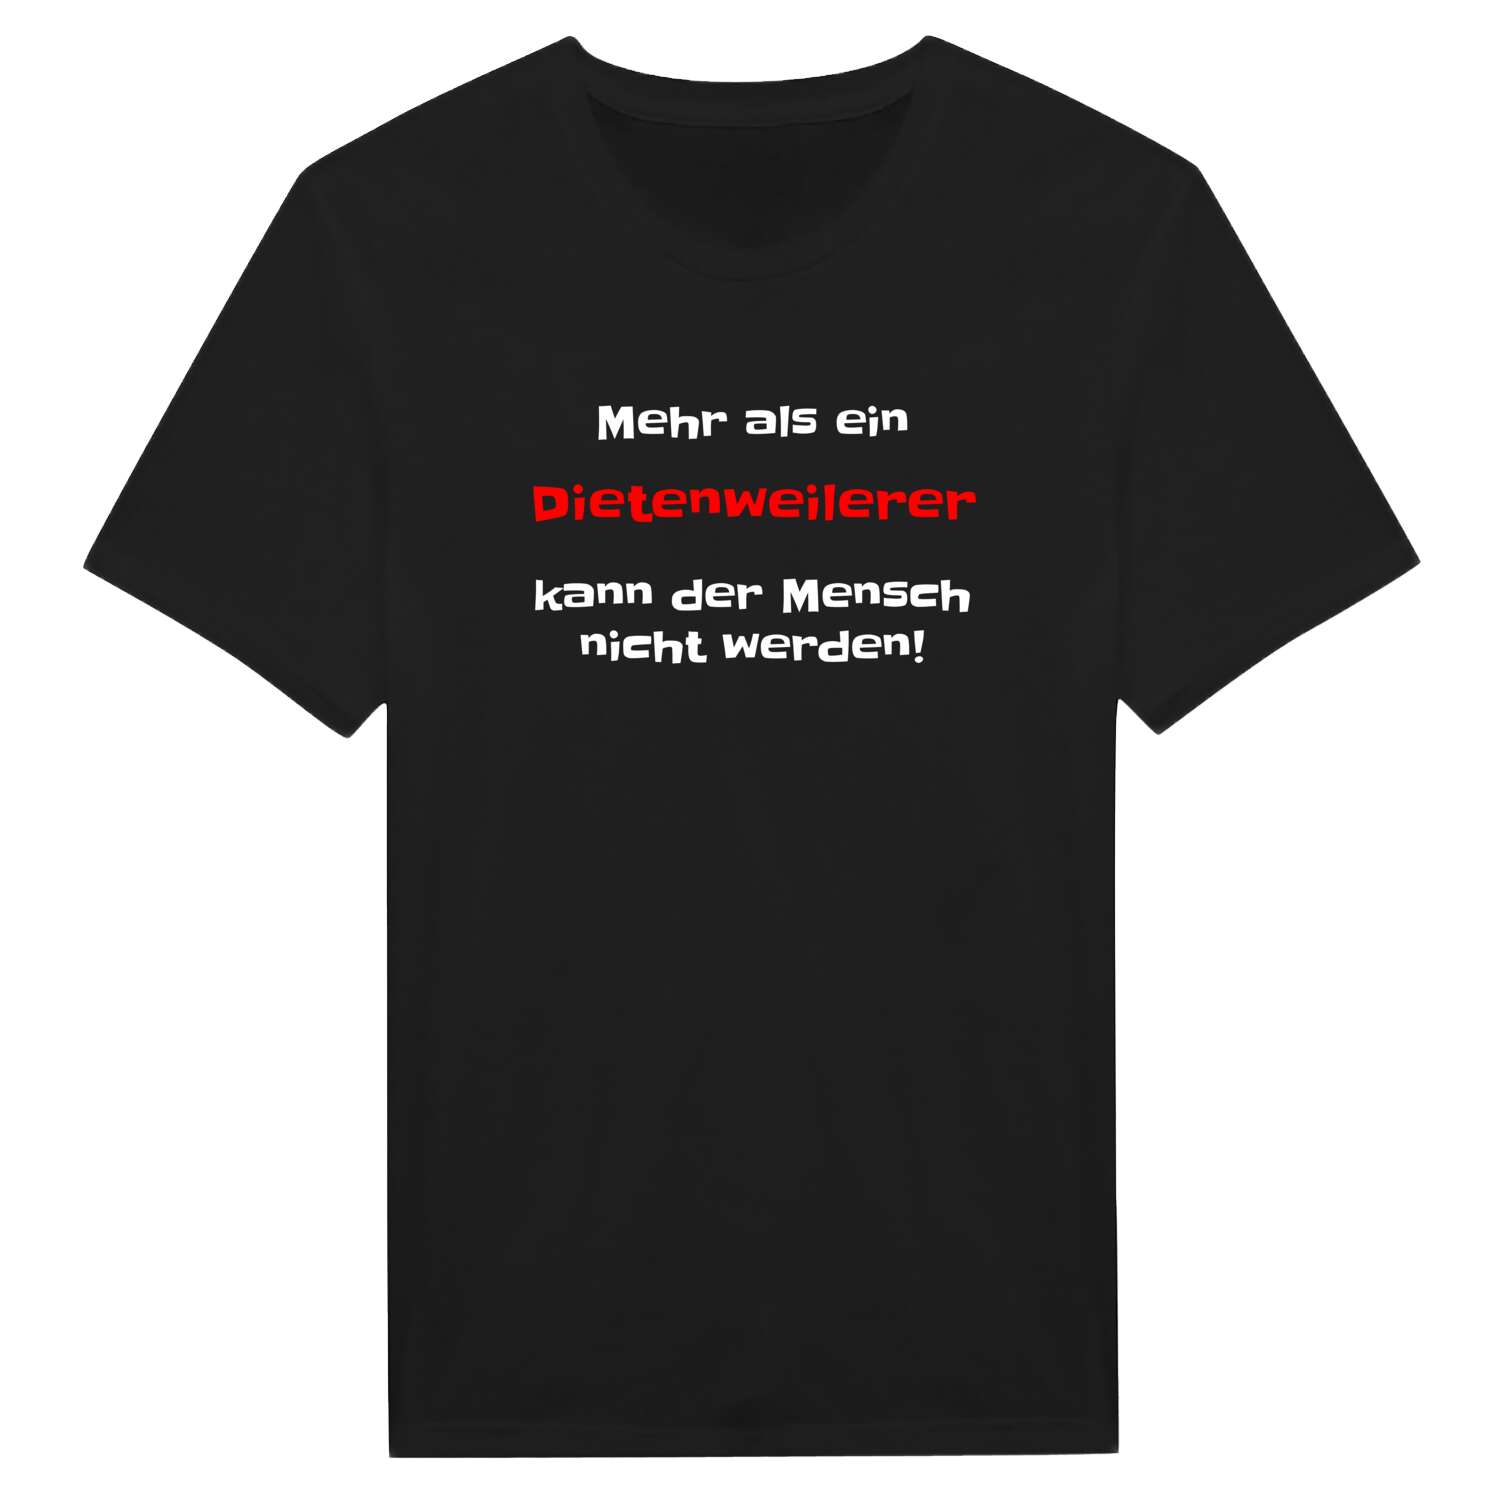 Dietenweiler T-Shirt »Mehr als ein«